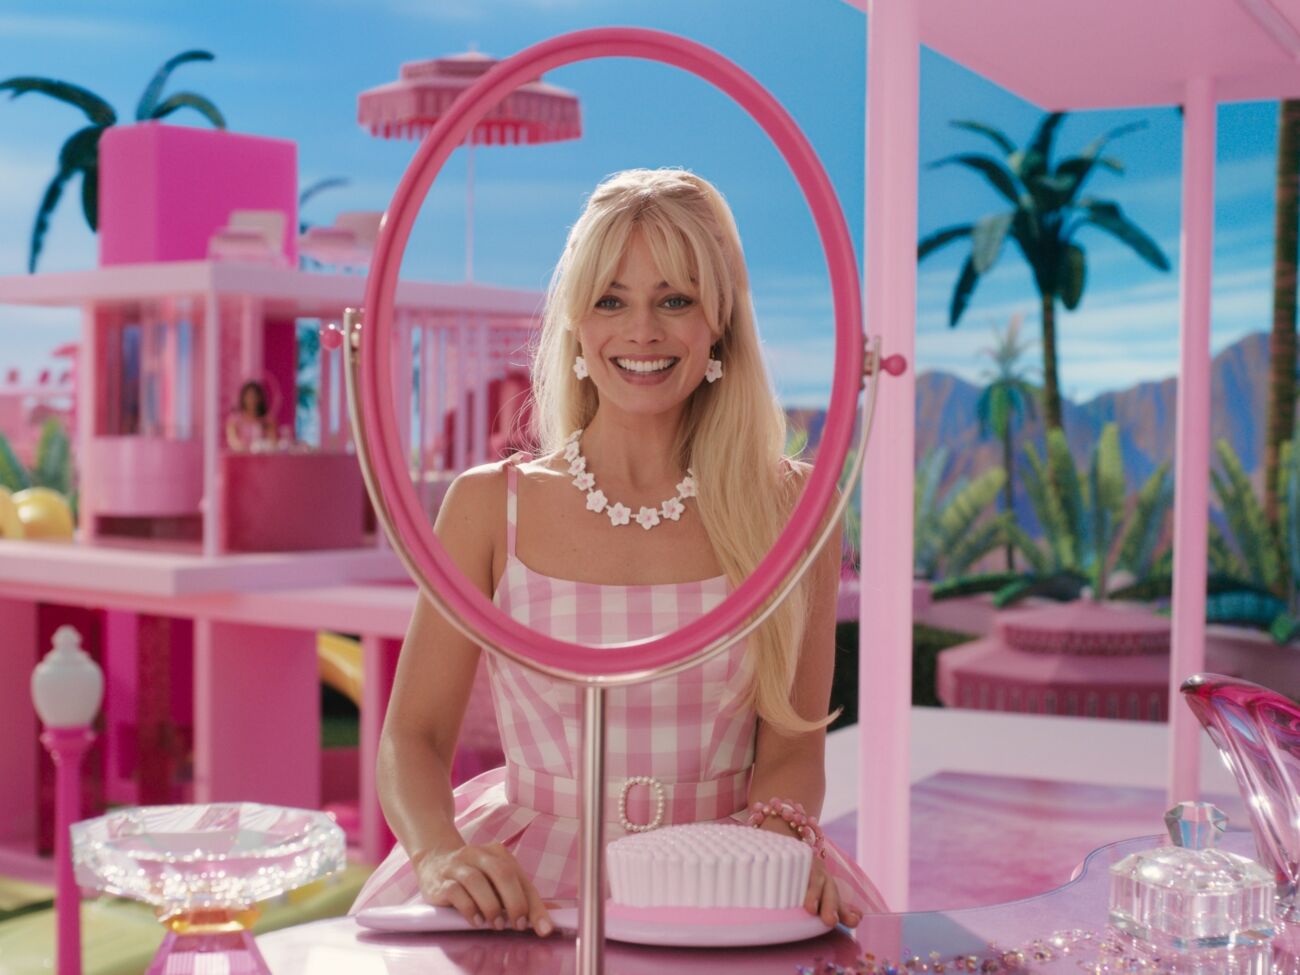 Barbie e Oppenheimer ganham nota acima de 90% no Rotten Tomatoes